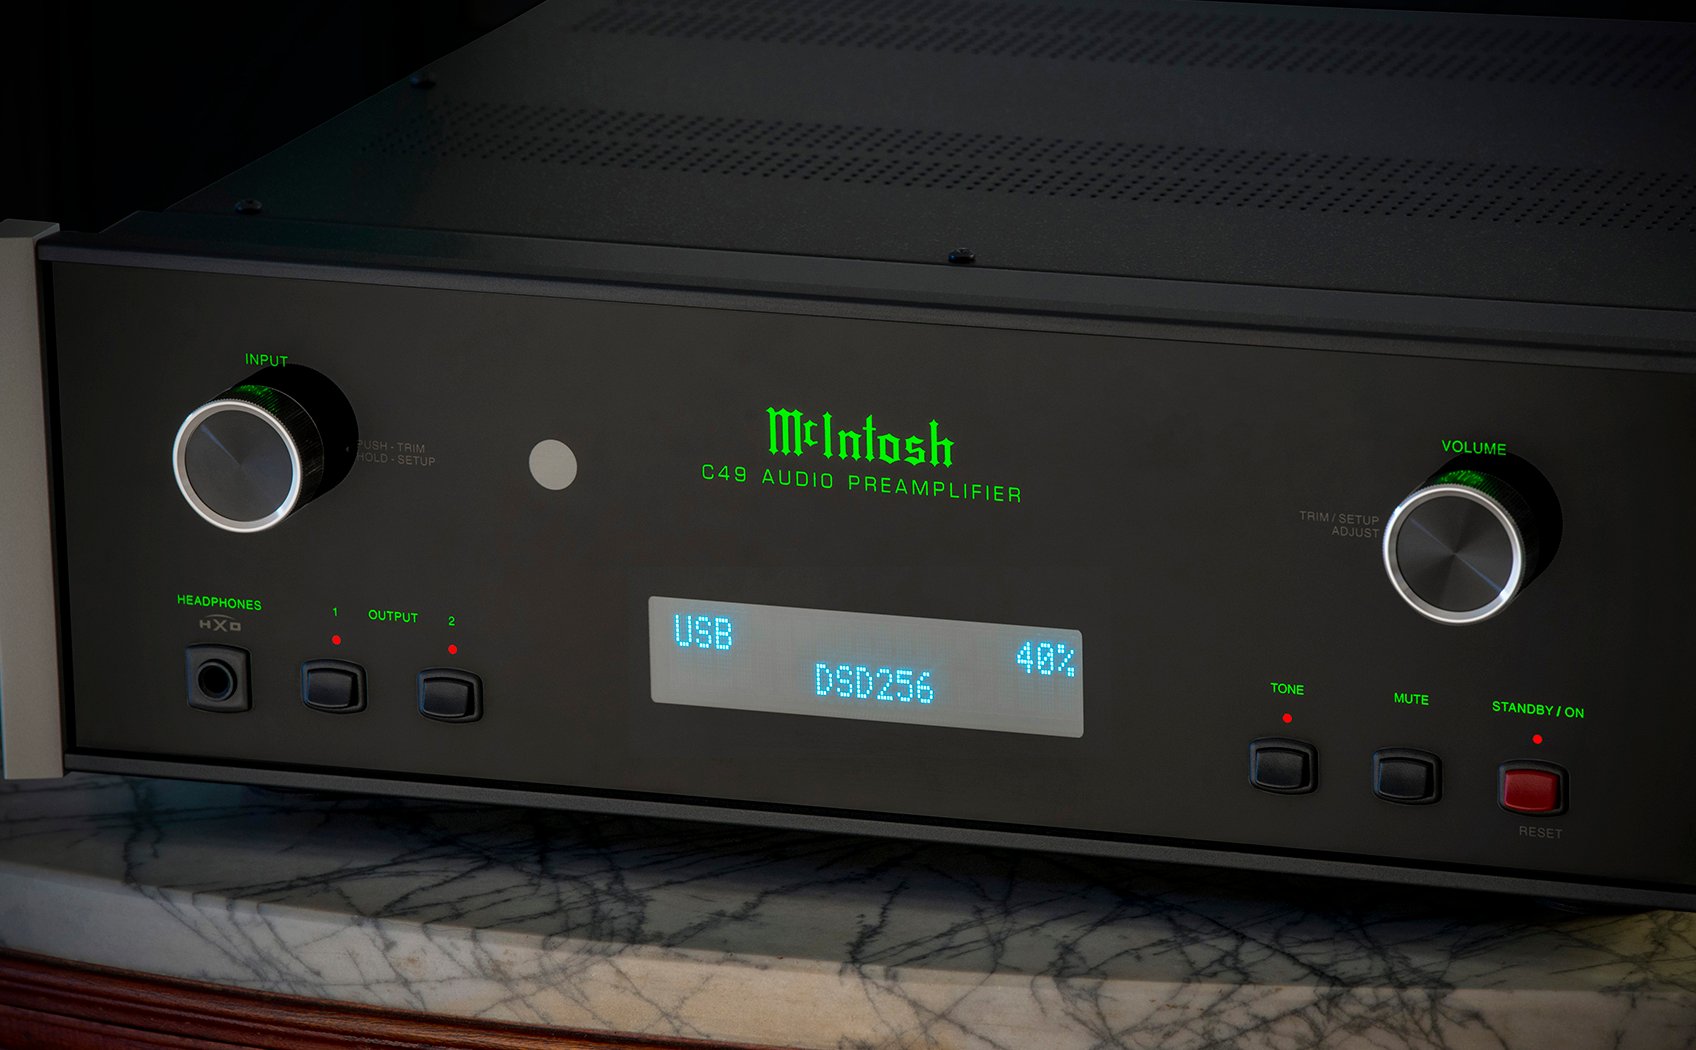 McIntosh C49 Pre-amplifier, cho phép nâng cấp trong tương lai, khoảng 117tr